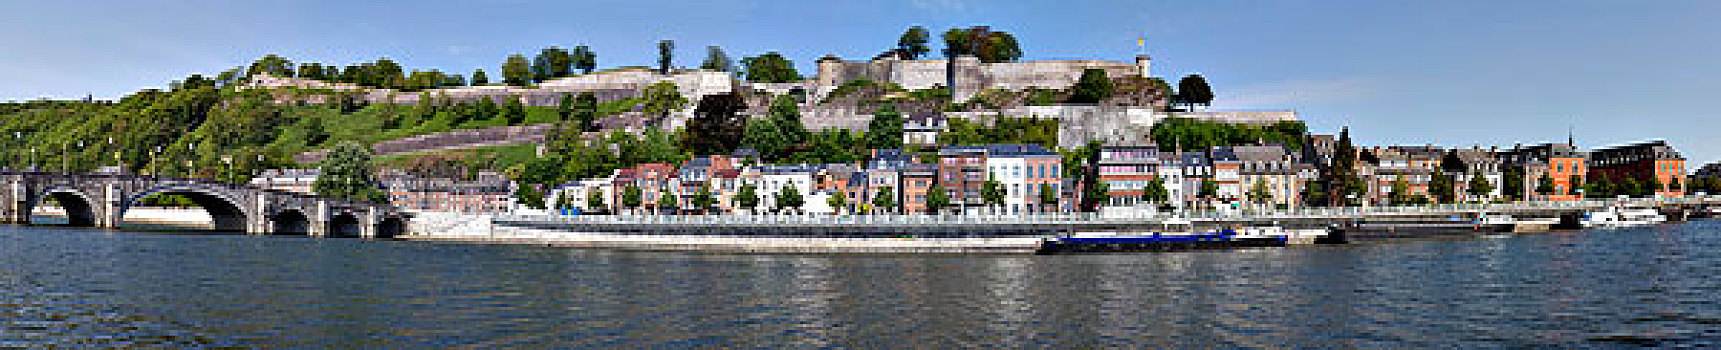 城堡,排,房子,河,默兹河,阿穆尔河,瓦龙,区域,比利时,欧洲